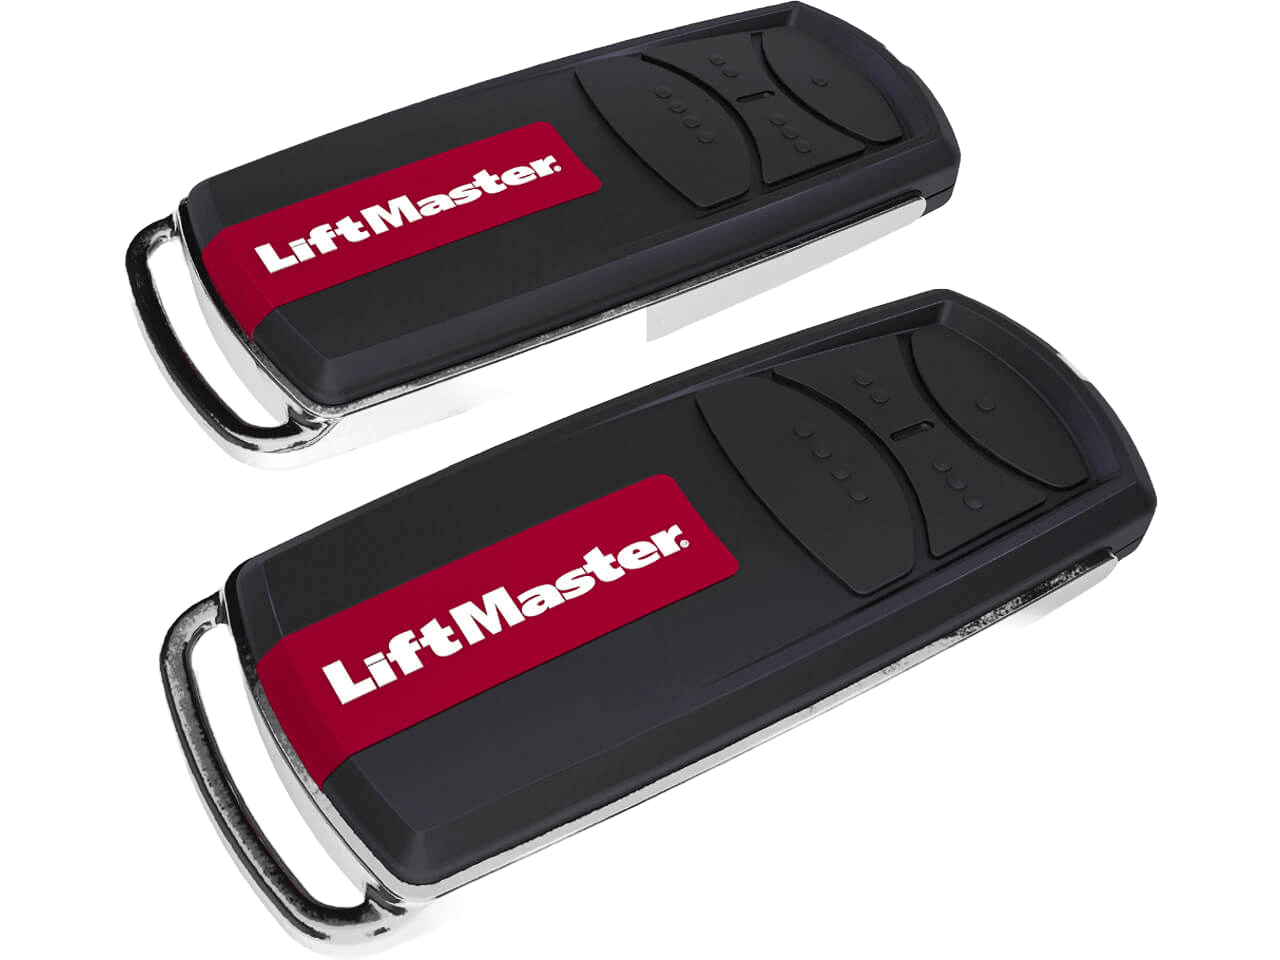 LiftMaster Garage Door Opener Set LM55EVF up to 90 kg Door Weight with C-Rail